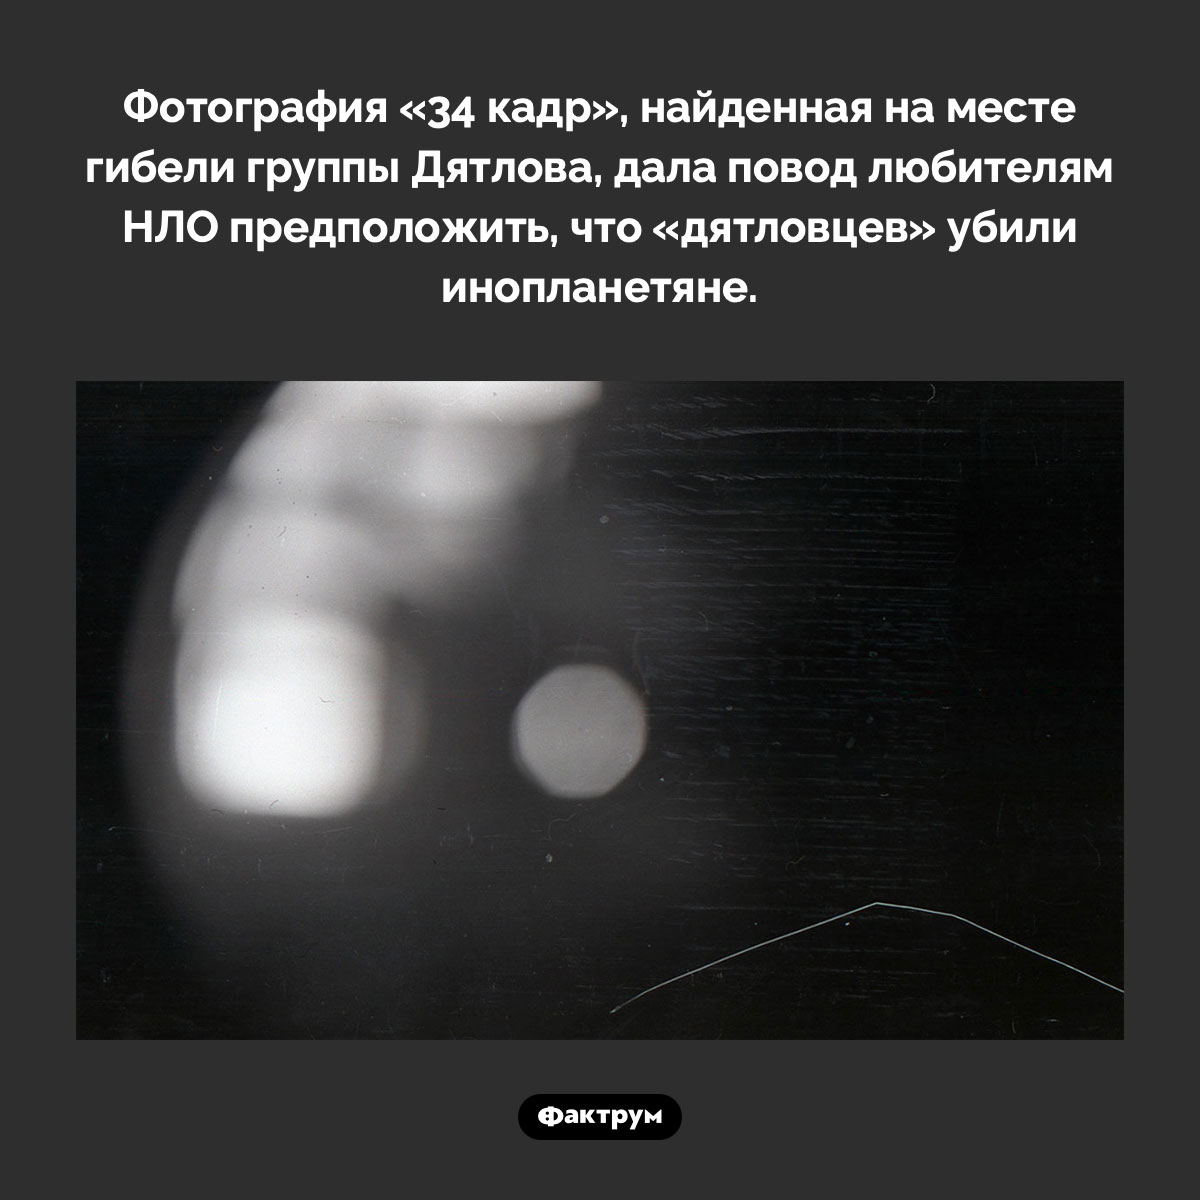 «34 кадр» группы Дятлова. Фотография «34 кадр», найденная на месте гибели группы Дятлова, дала повод любителям НЛО предположить, что «дятловцев» убили инопланетяне.